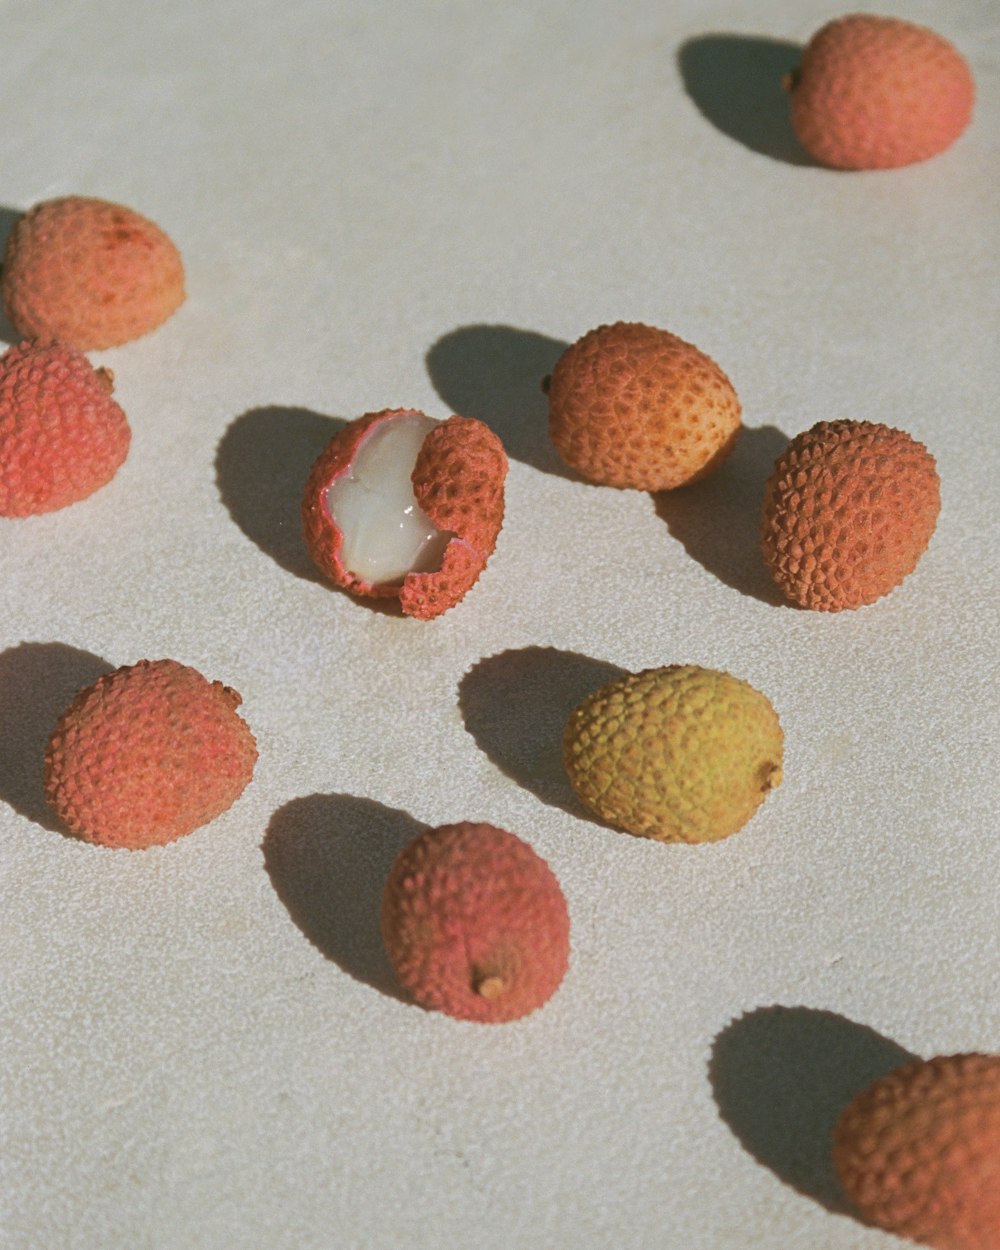 un groupe de fruits assis sur une surface blanche